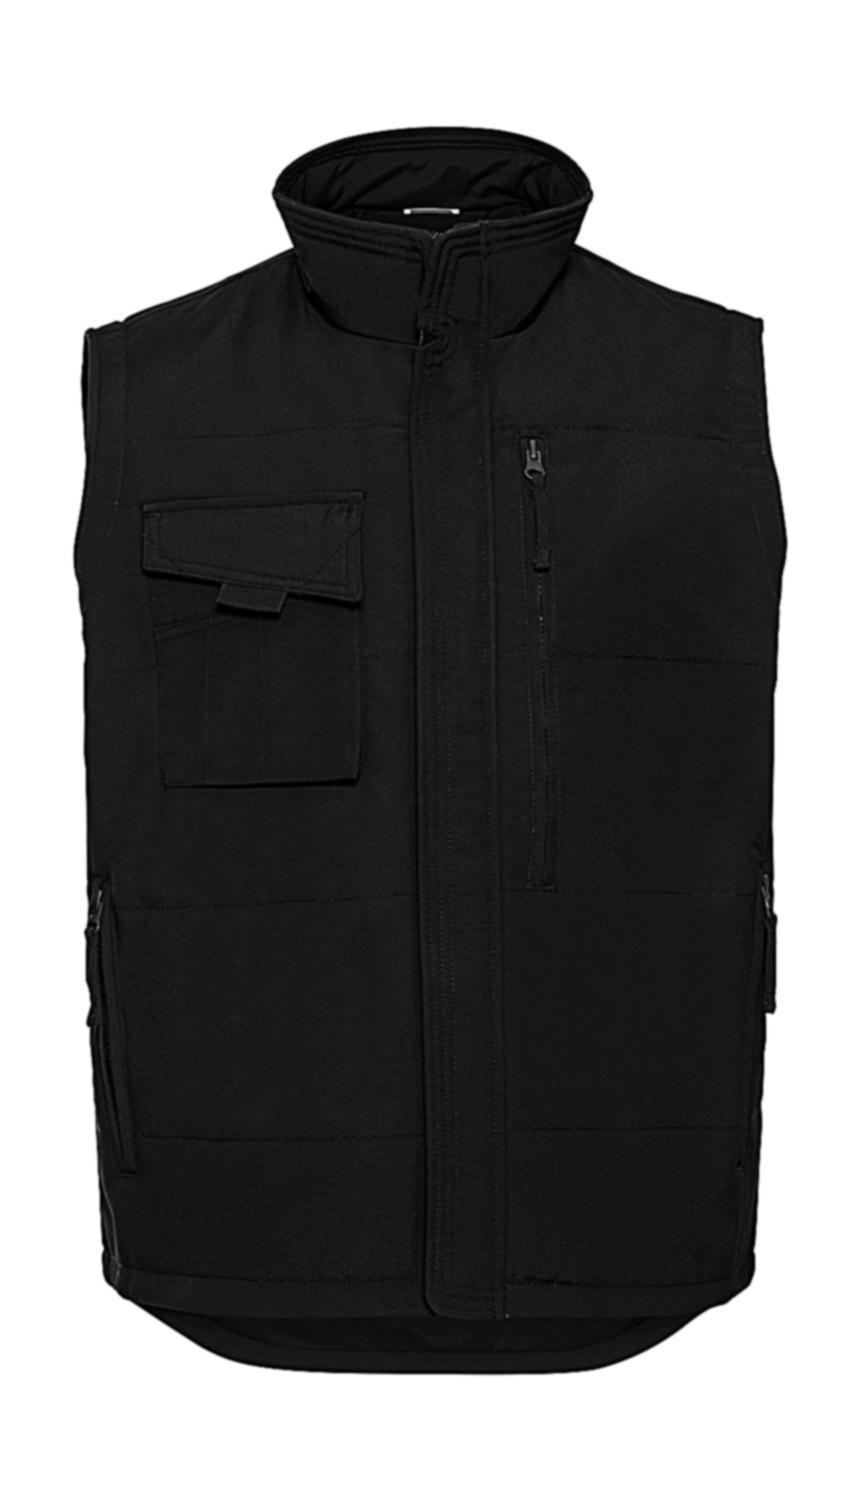  Heavy Duty Workwear Gilet in Farbe Black